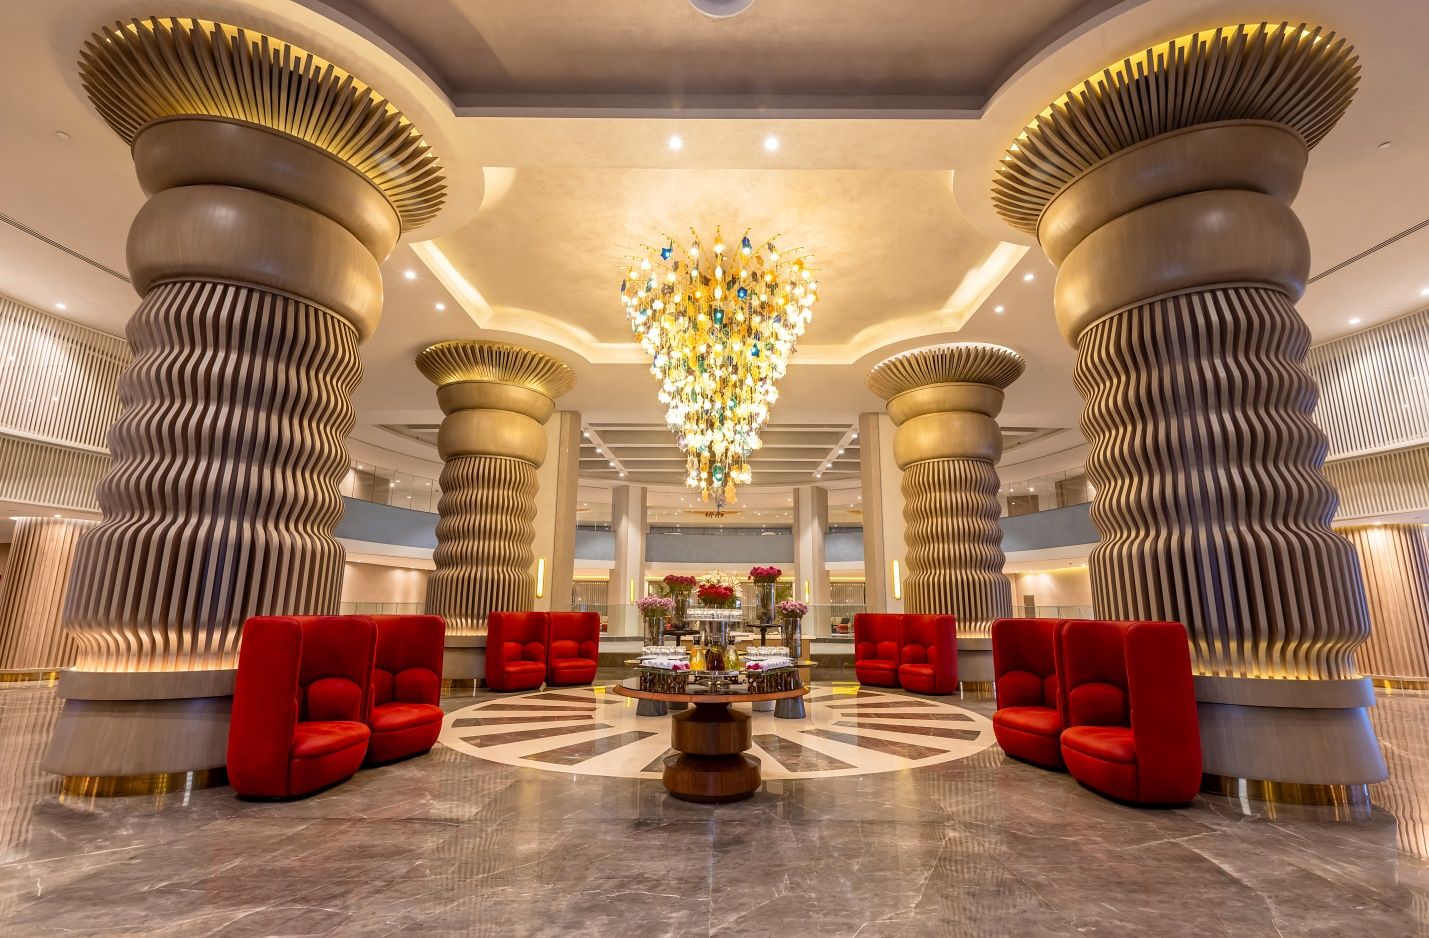 Rixos Radamis будет самым крупным отелем на Ближнем Востоке 3076363 — Kapital.kz 